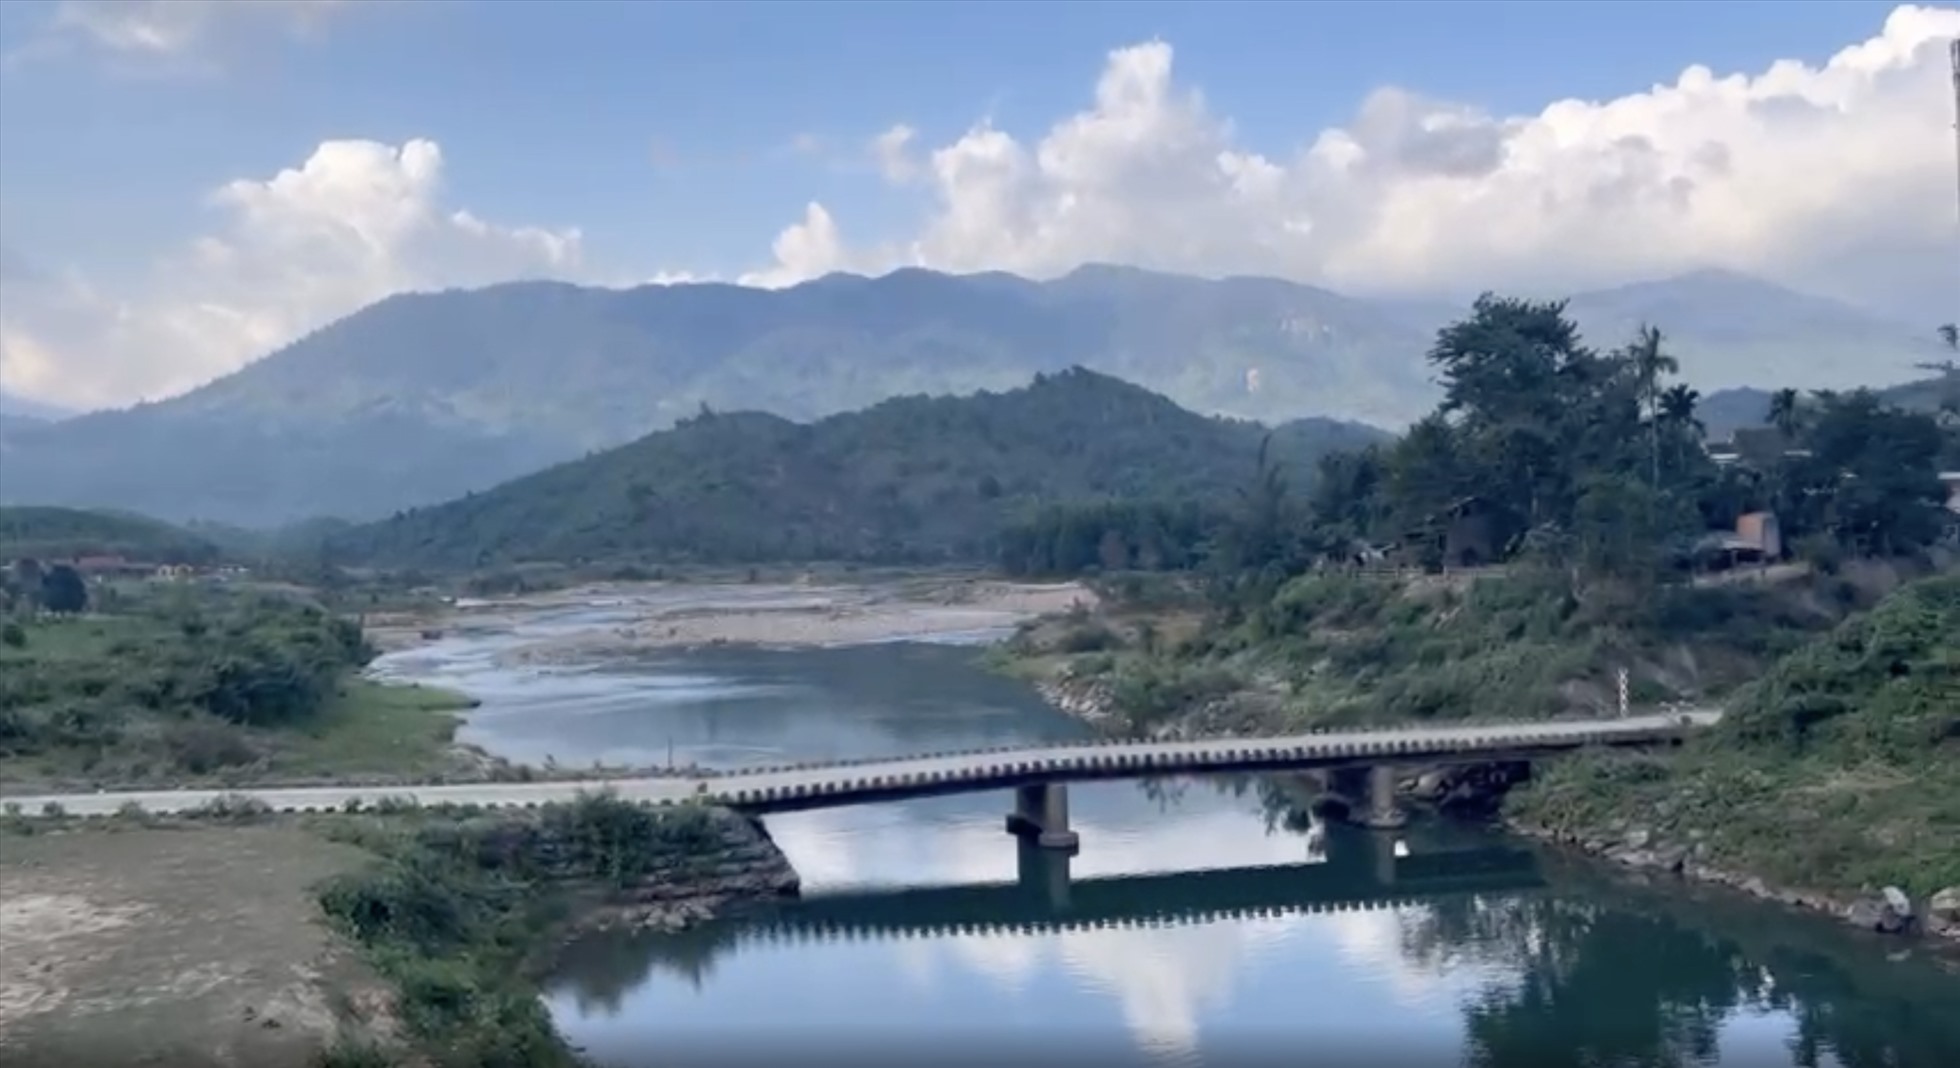 Khu vực cầu Sông Trang nơi có dự án đang bị tạm dừng vì khiếu nại trong đấu thầu. Ảnh: Hữu Long